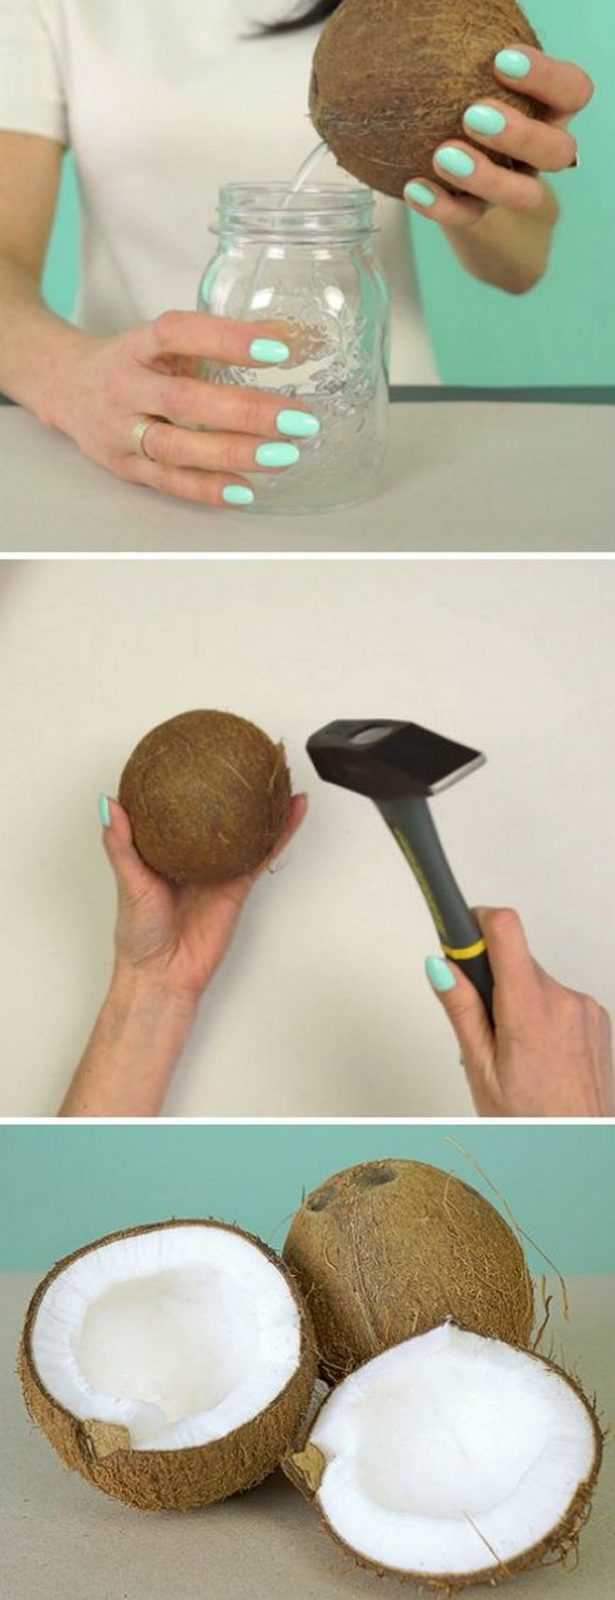 Как открыть кокос быстро и чисто ? - абсолютно все способы